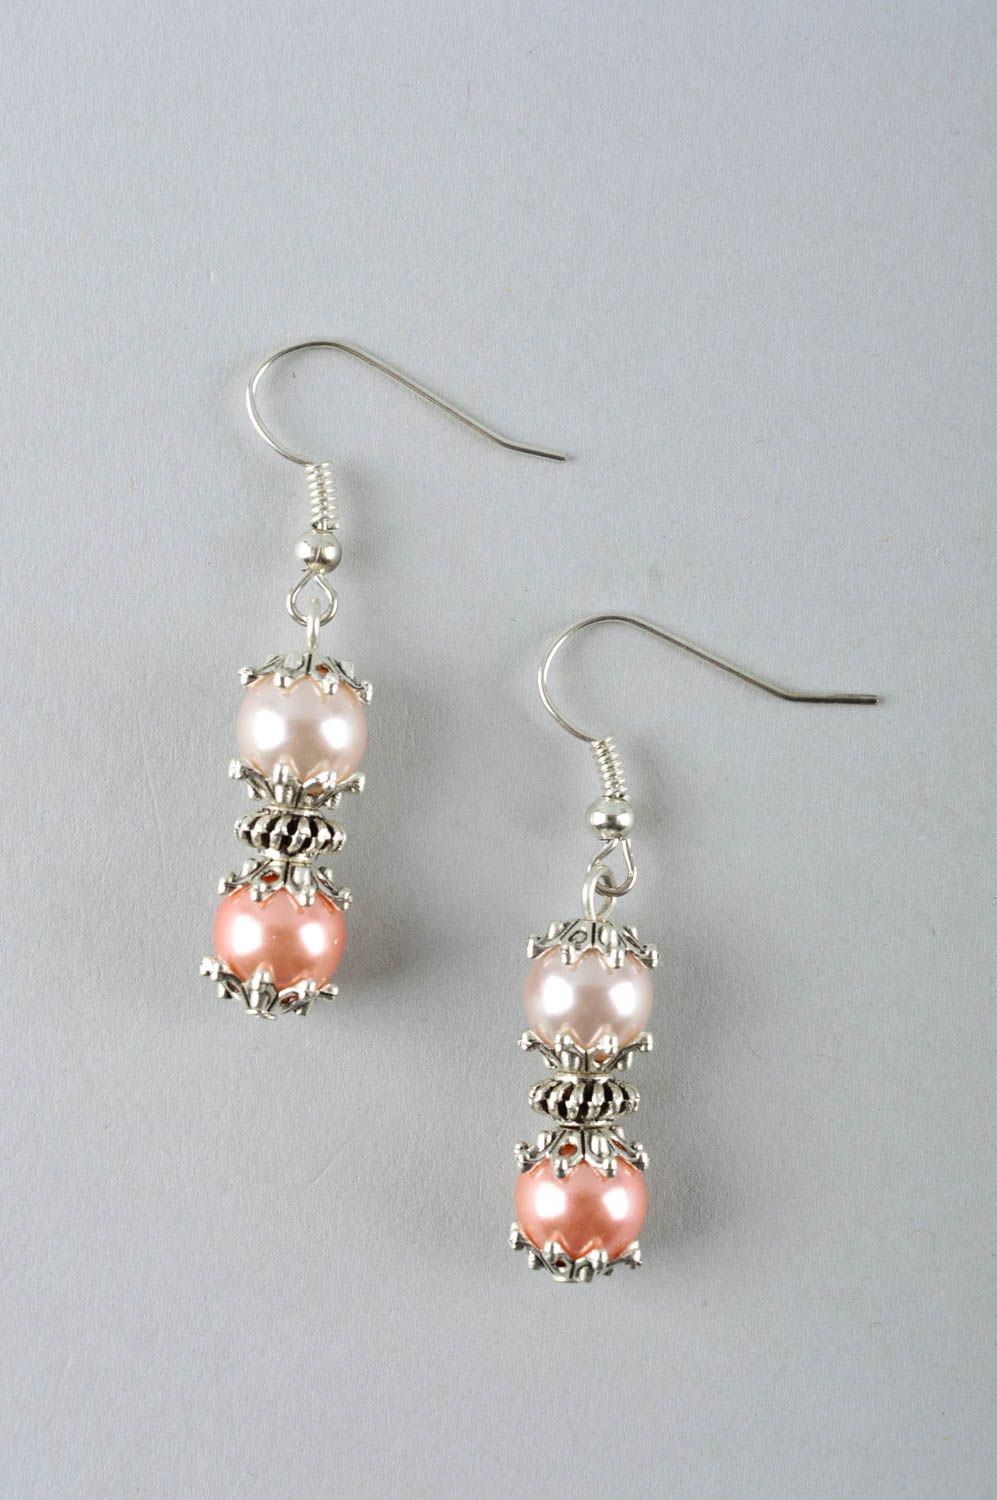 Handmade jewelry pearl earrings womens accessories dangling earrings for women photo 2